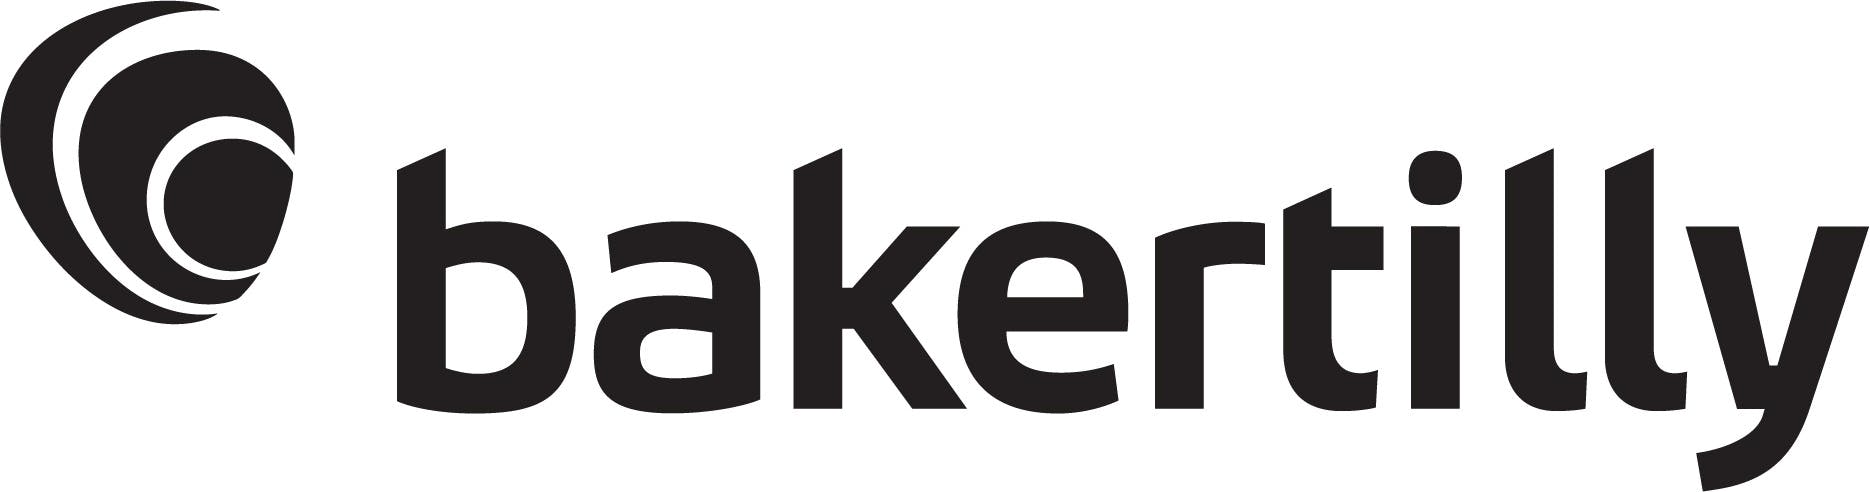 Baker Tilly Logo. 